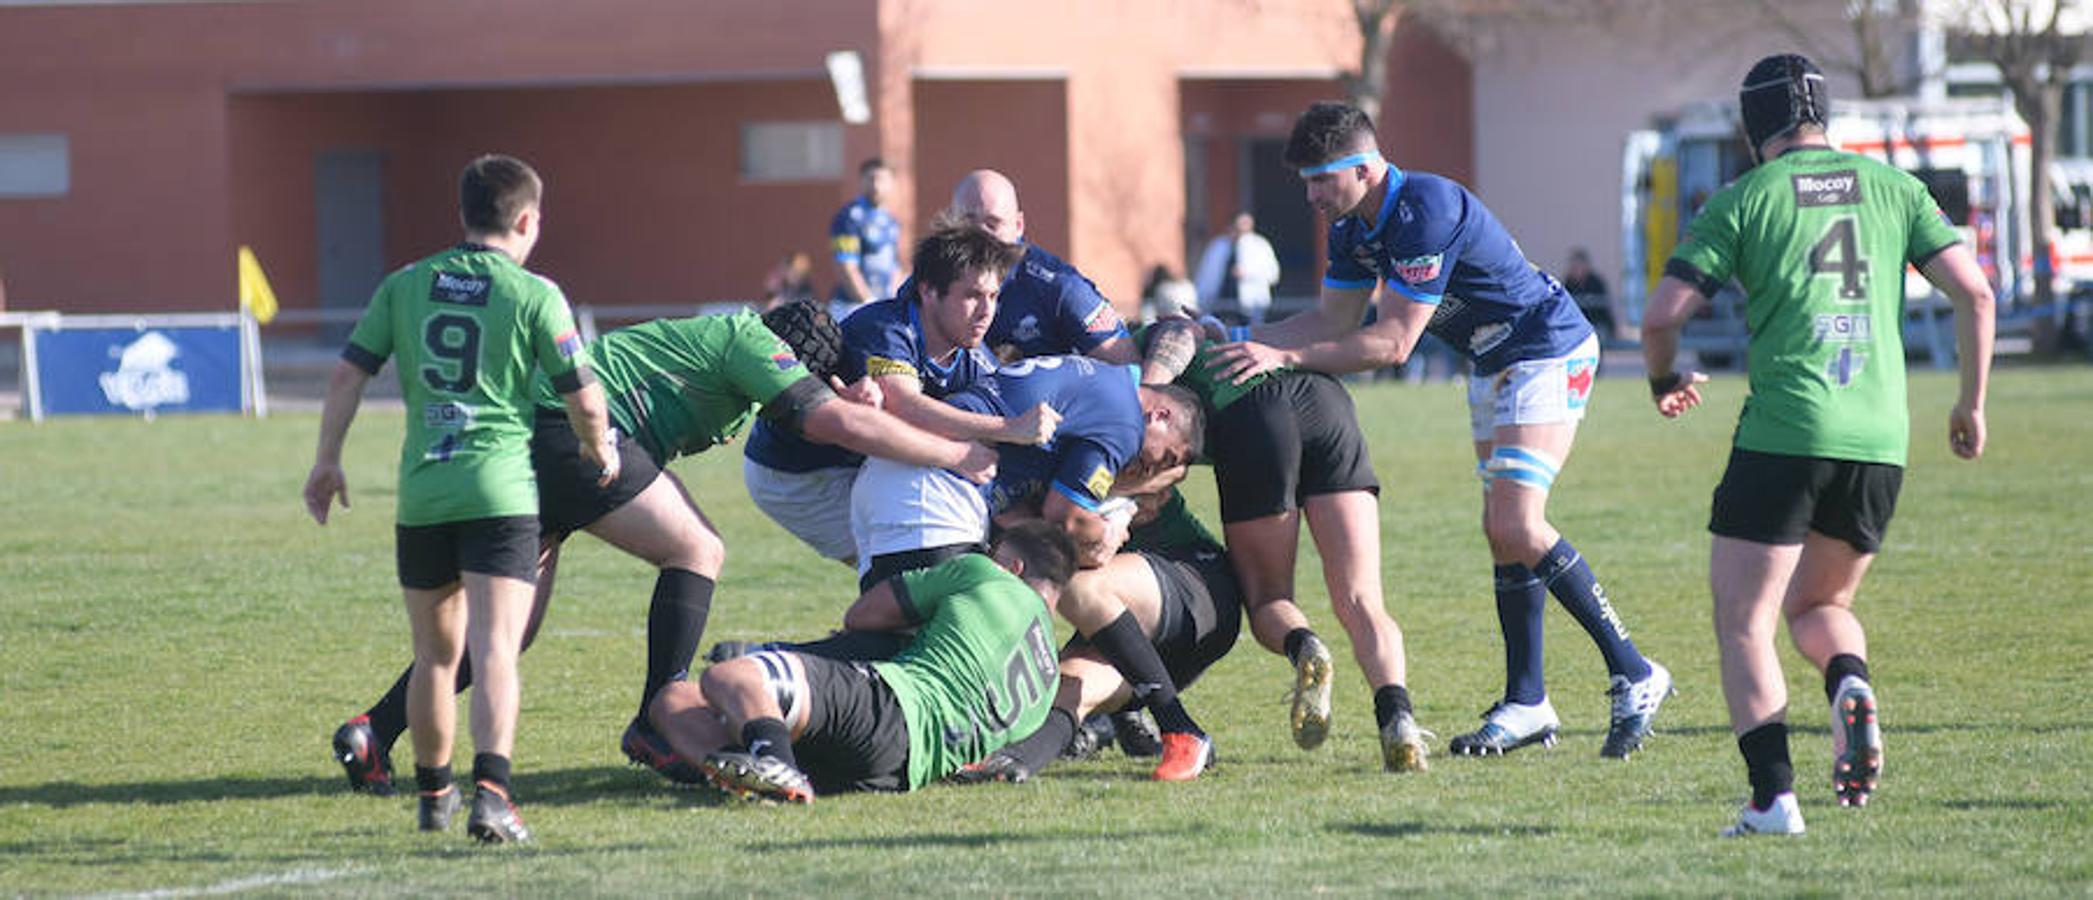 Partido de rugby entre el VRAC Quesos Entrepinares y el Gernika, que se saldó con un empate a 27.